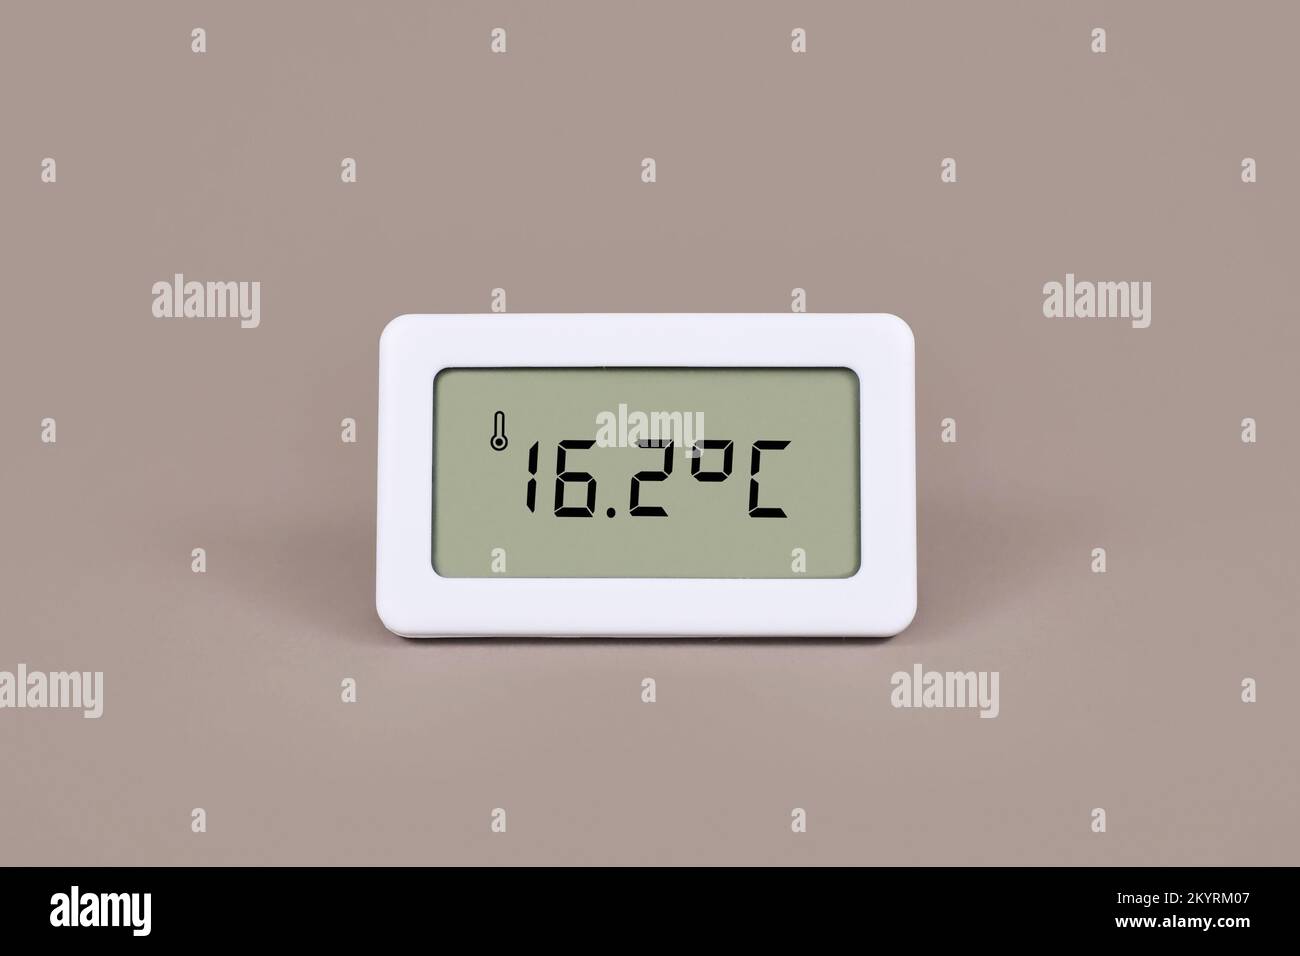 Termometro digitale con temperatura ambiente fredda di 16,7 gradi Celsius Foto Stock